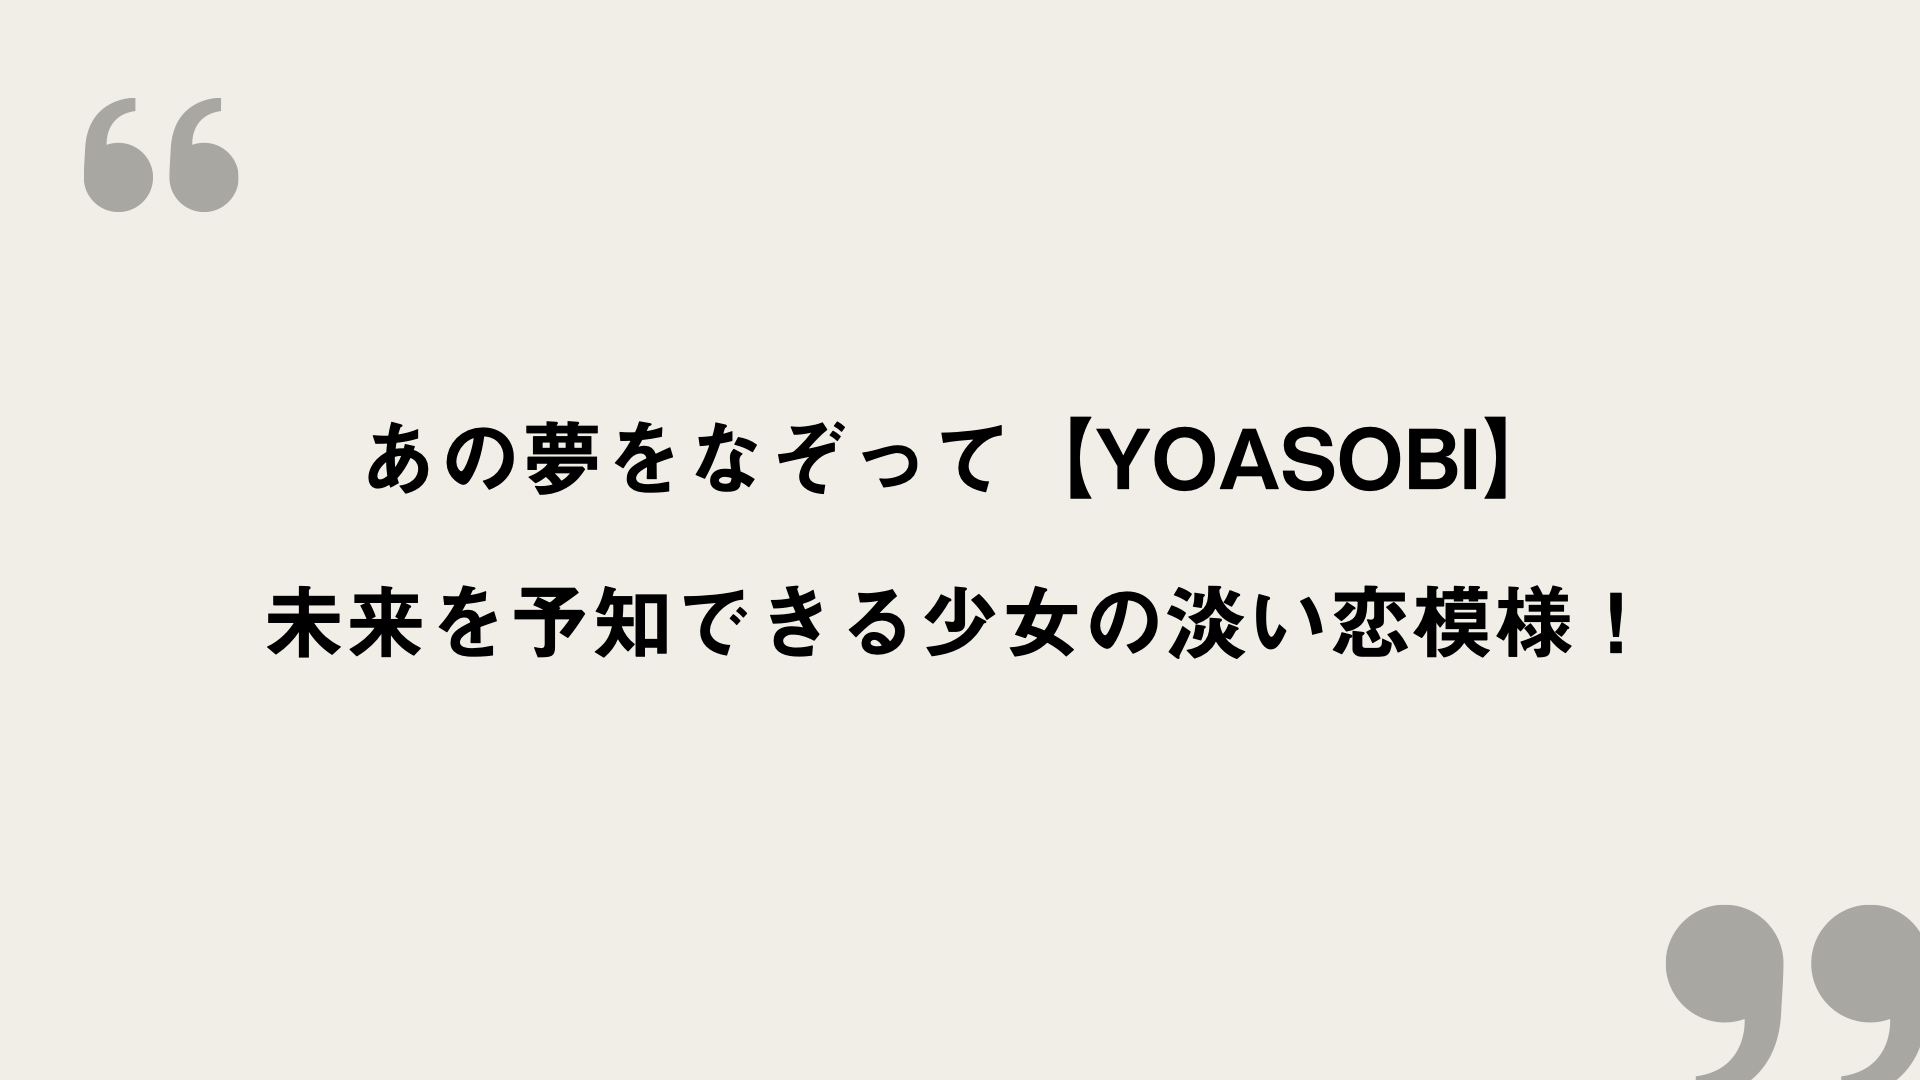 あの夢をなぞって Yoasobi 歌詞の意味を考察 未来を予知できる少女の淡い恋模様 Framu Media